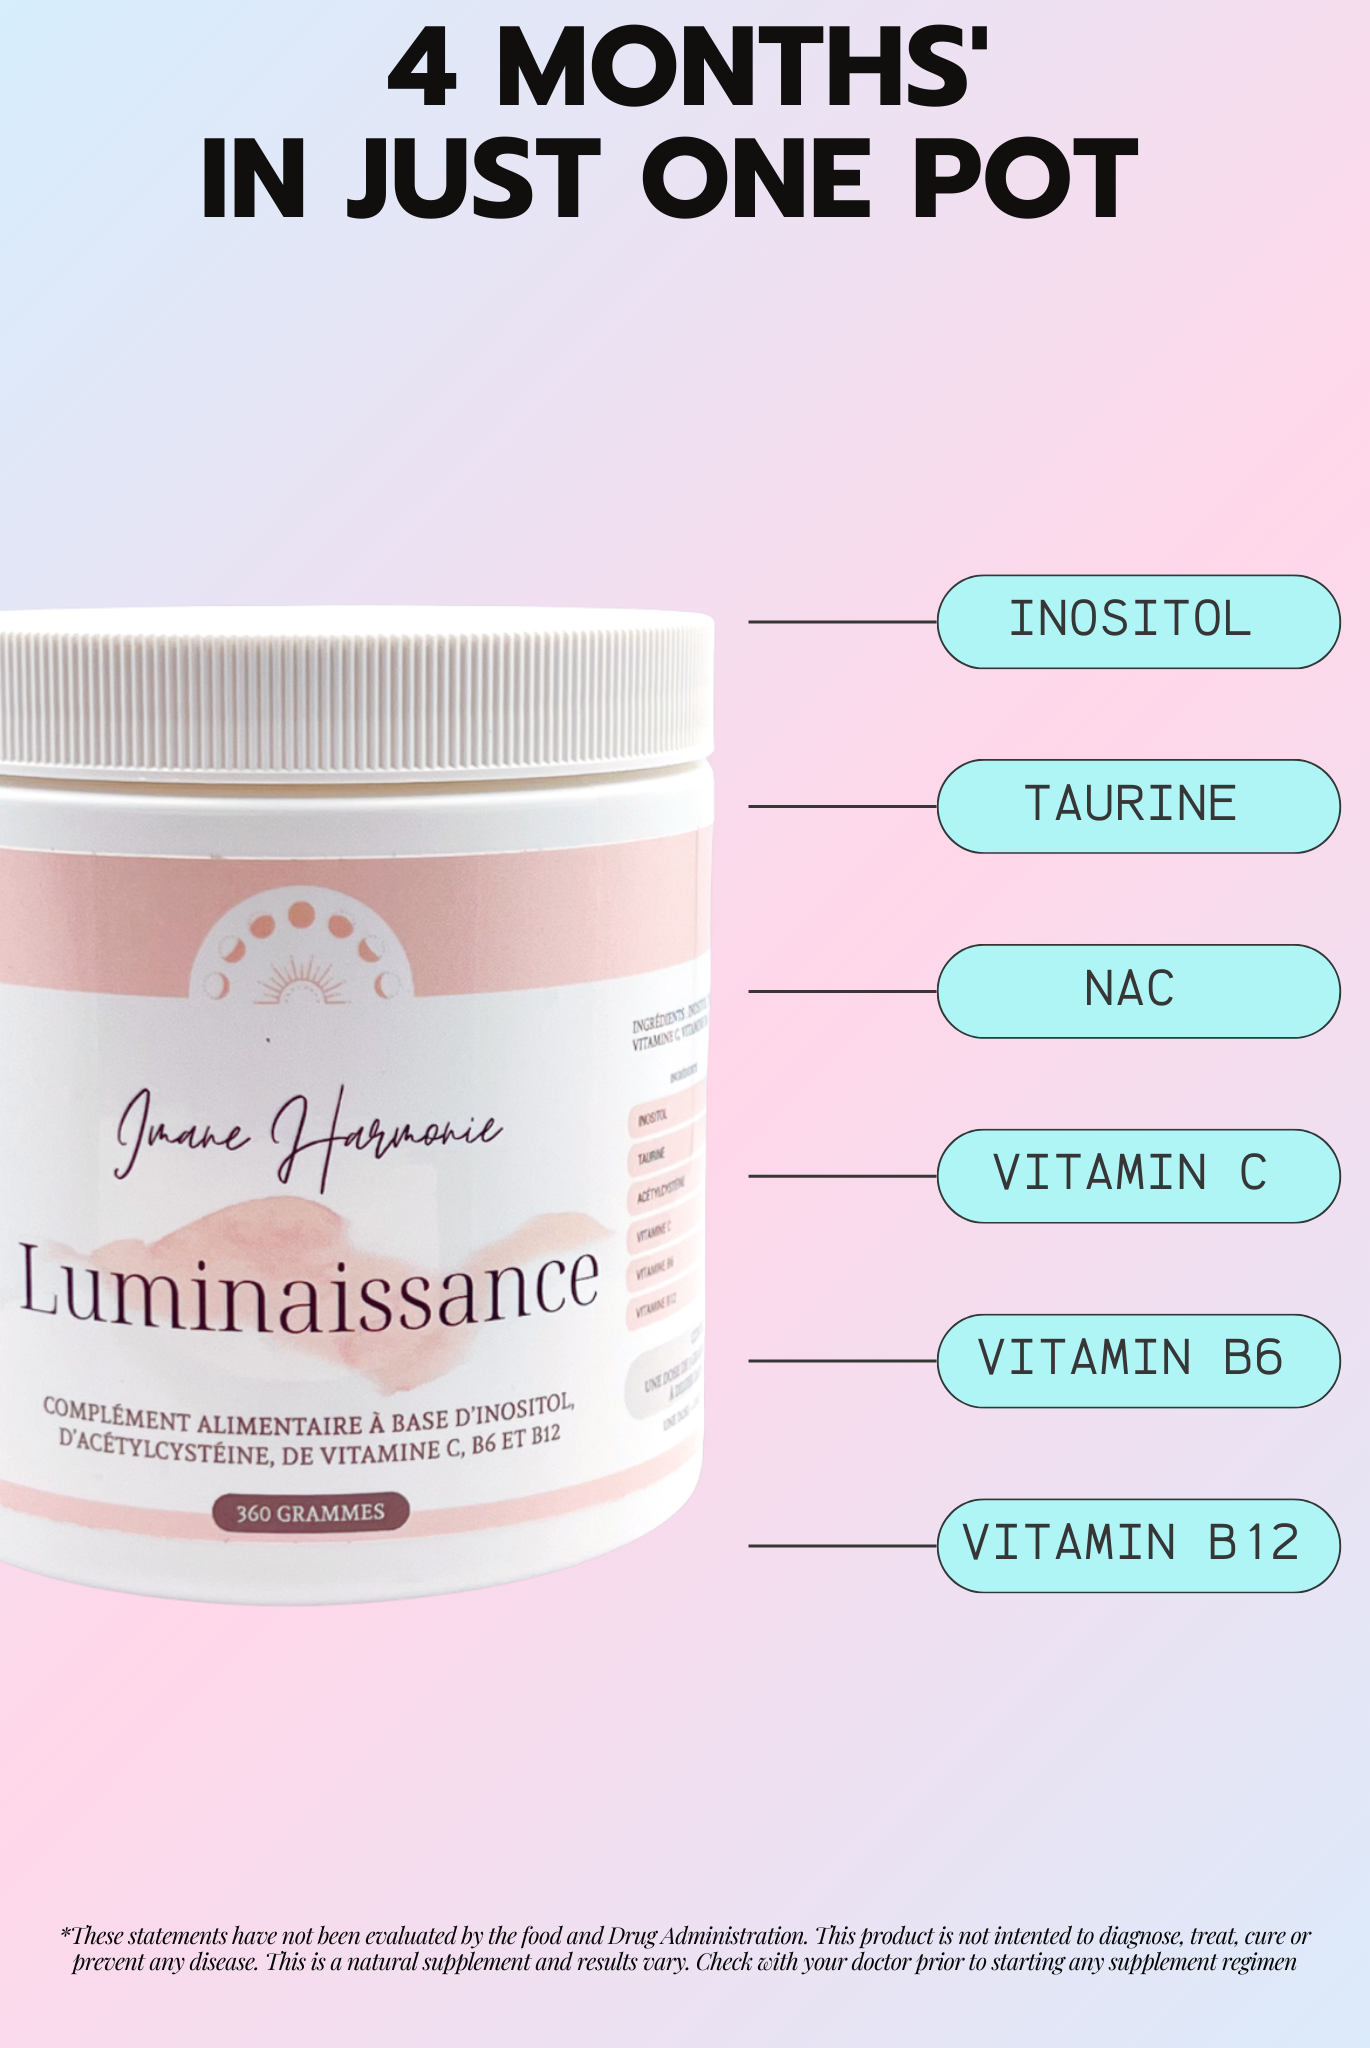 Supplements of luminaissance : inositol, taurine, nac, vitamin c, vitamin b6, vitamin b12